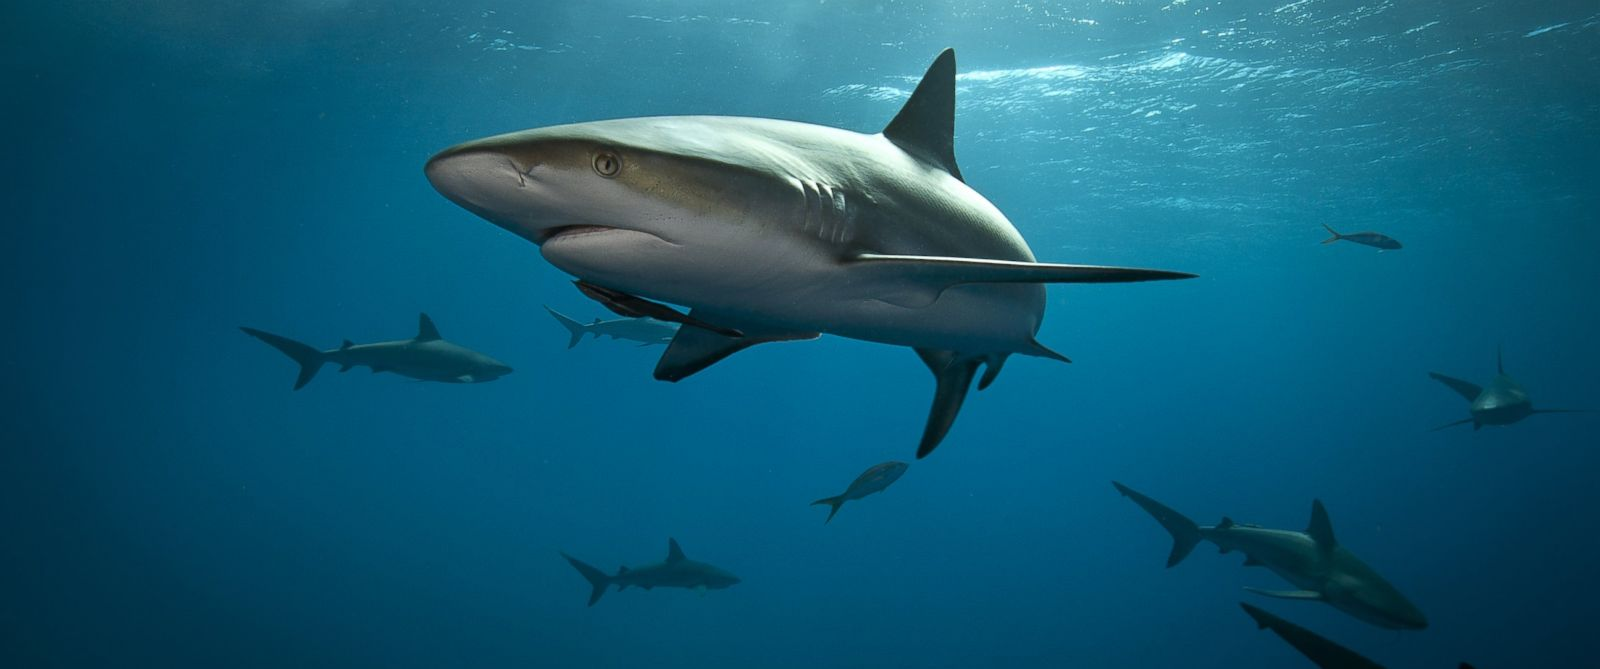 绝地求生皮肤评测 狂鲨之吻98K橄榄枝锅